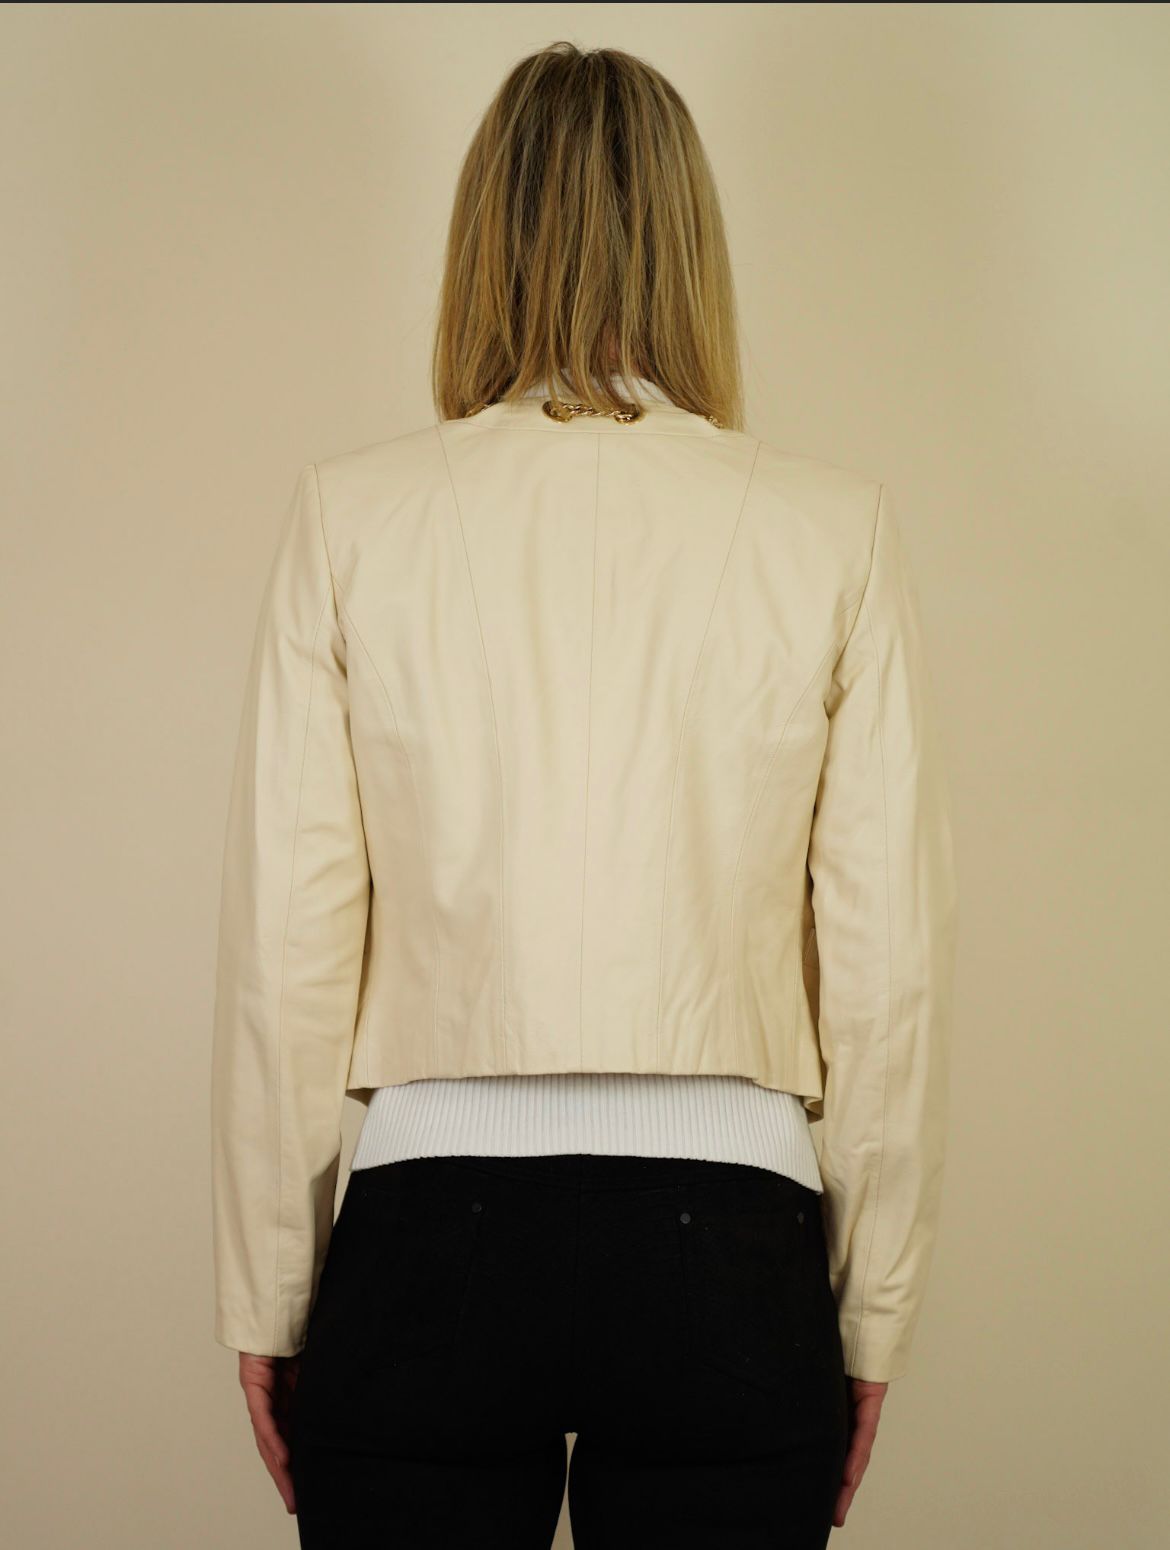 Elisabetta Franchi cropped leather jacket size 48